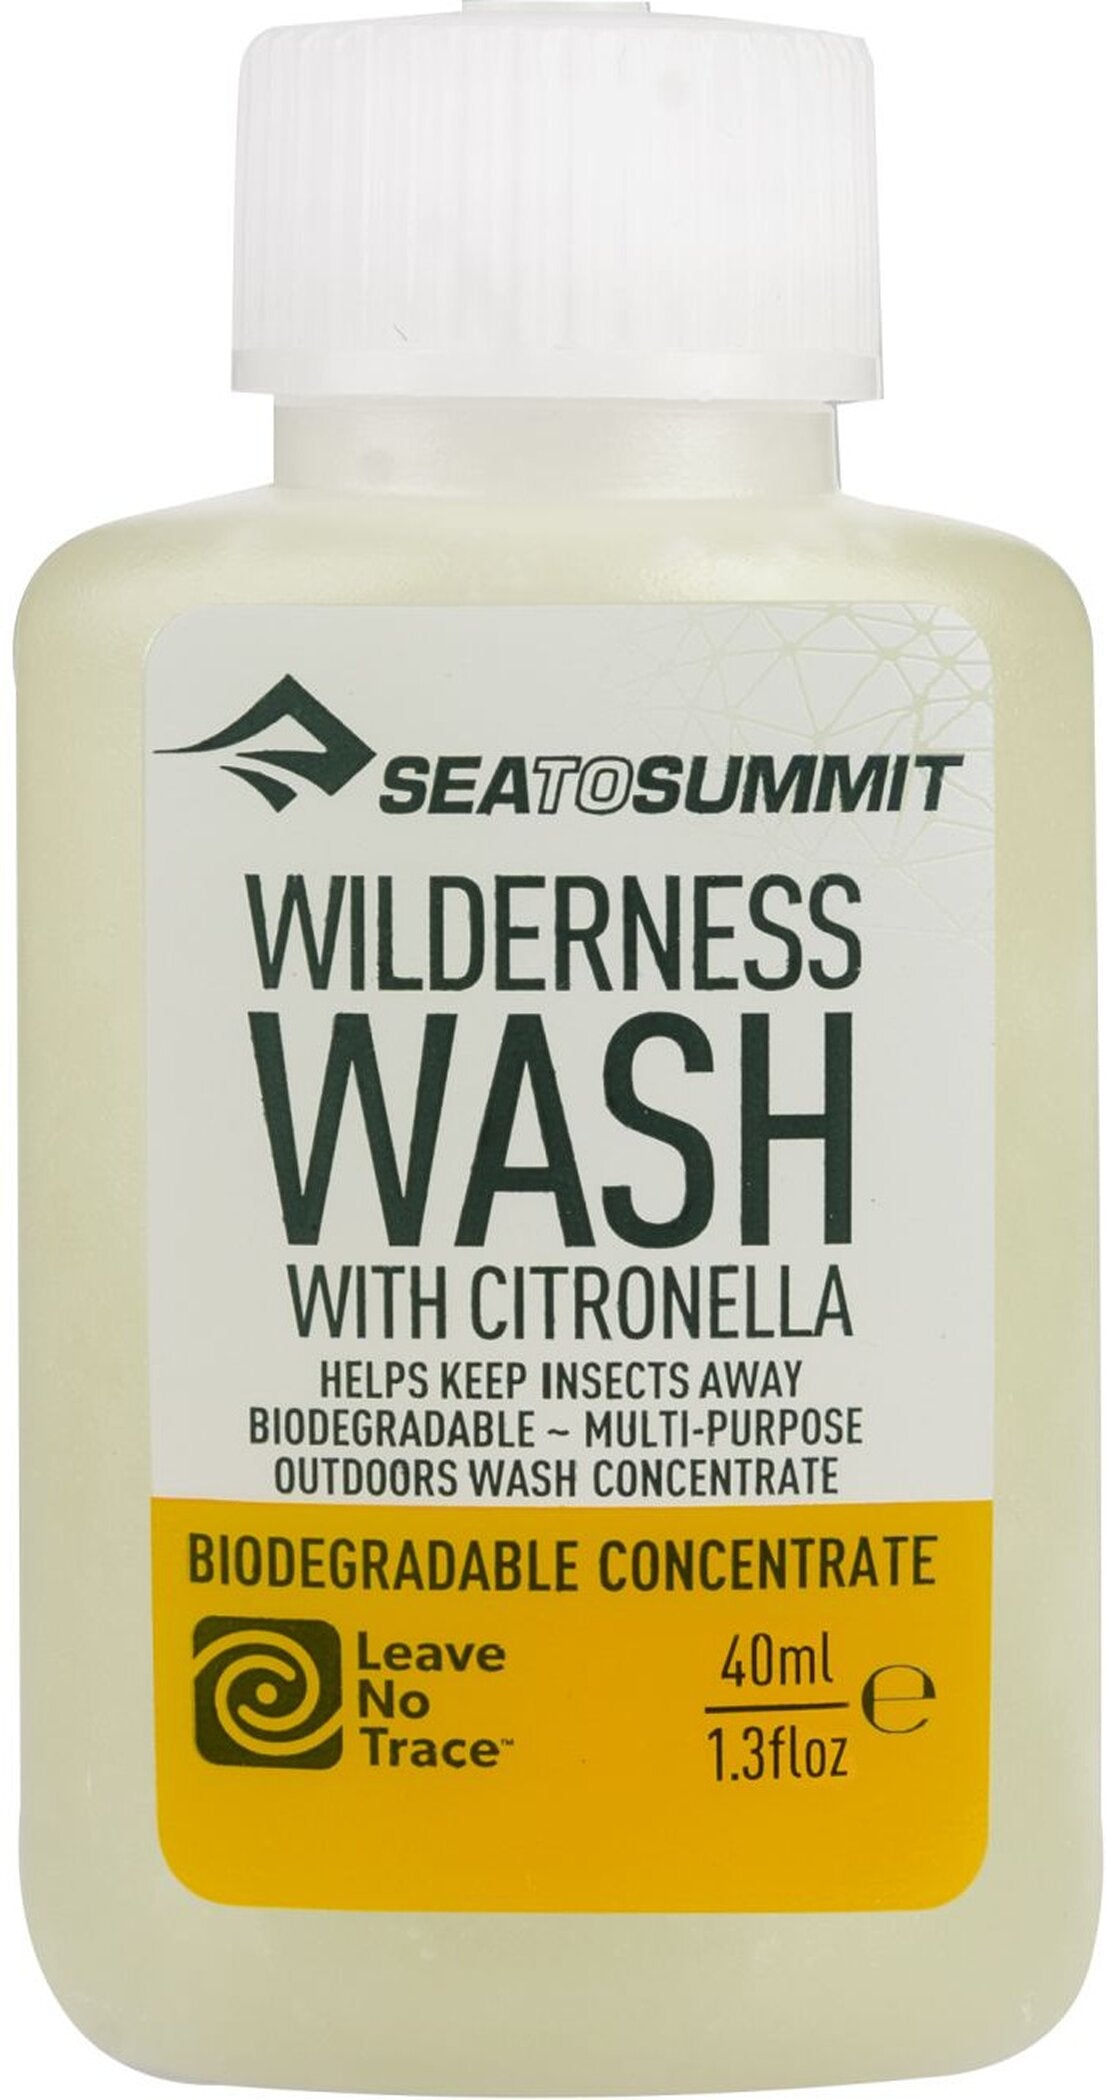 Hygieneartikel Wilderness Wash with Citronella 40ml/1.3oz